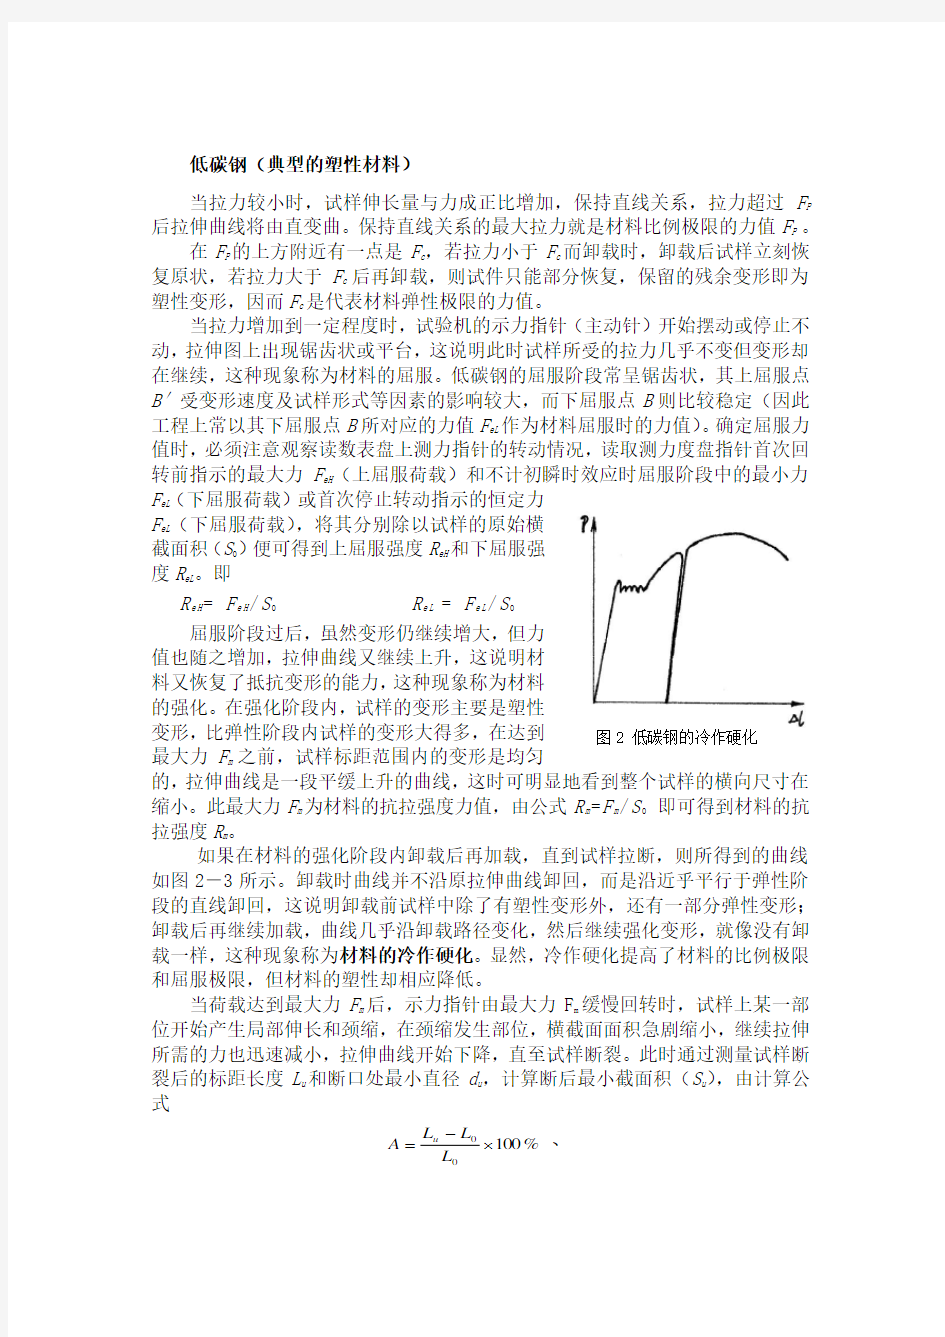 拉伸试验报告 北京科技大学